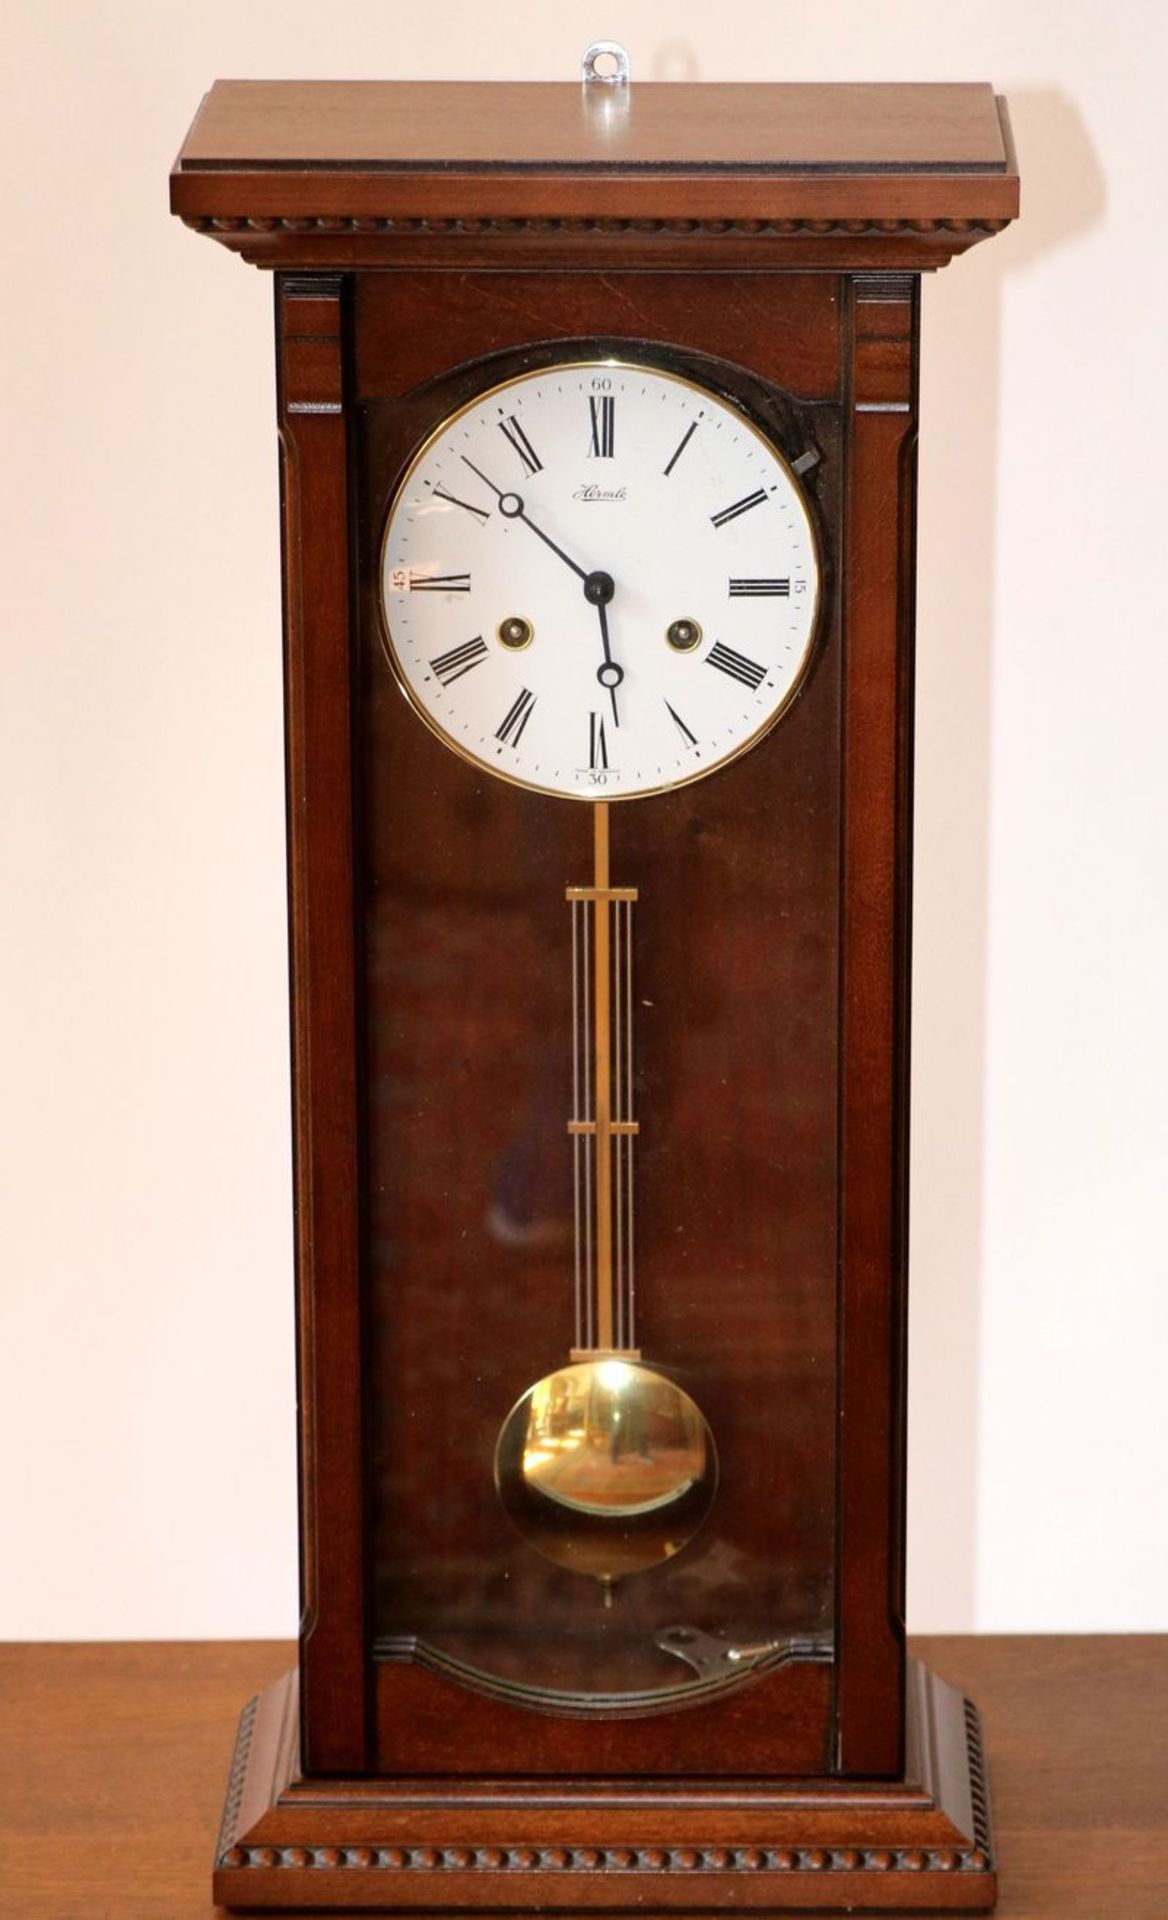 Wanduhr, Hermle um 1920 Nußaum. Hochrechtiger Uhrenkasten, verglast. Gerader Giebel mit